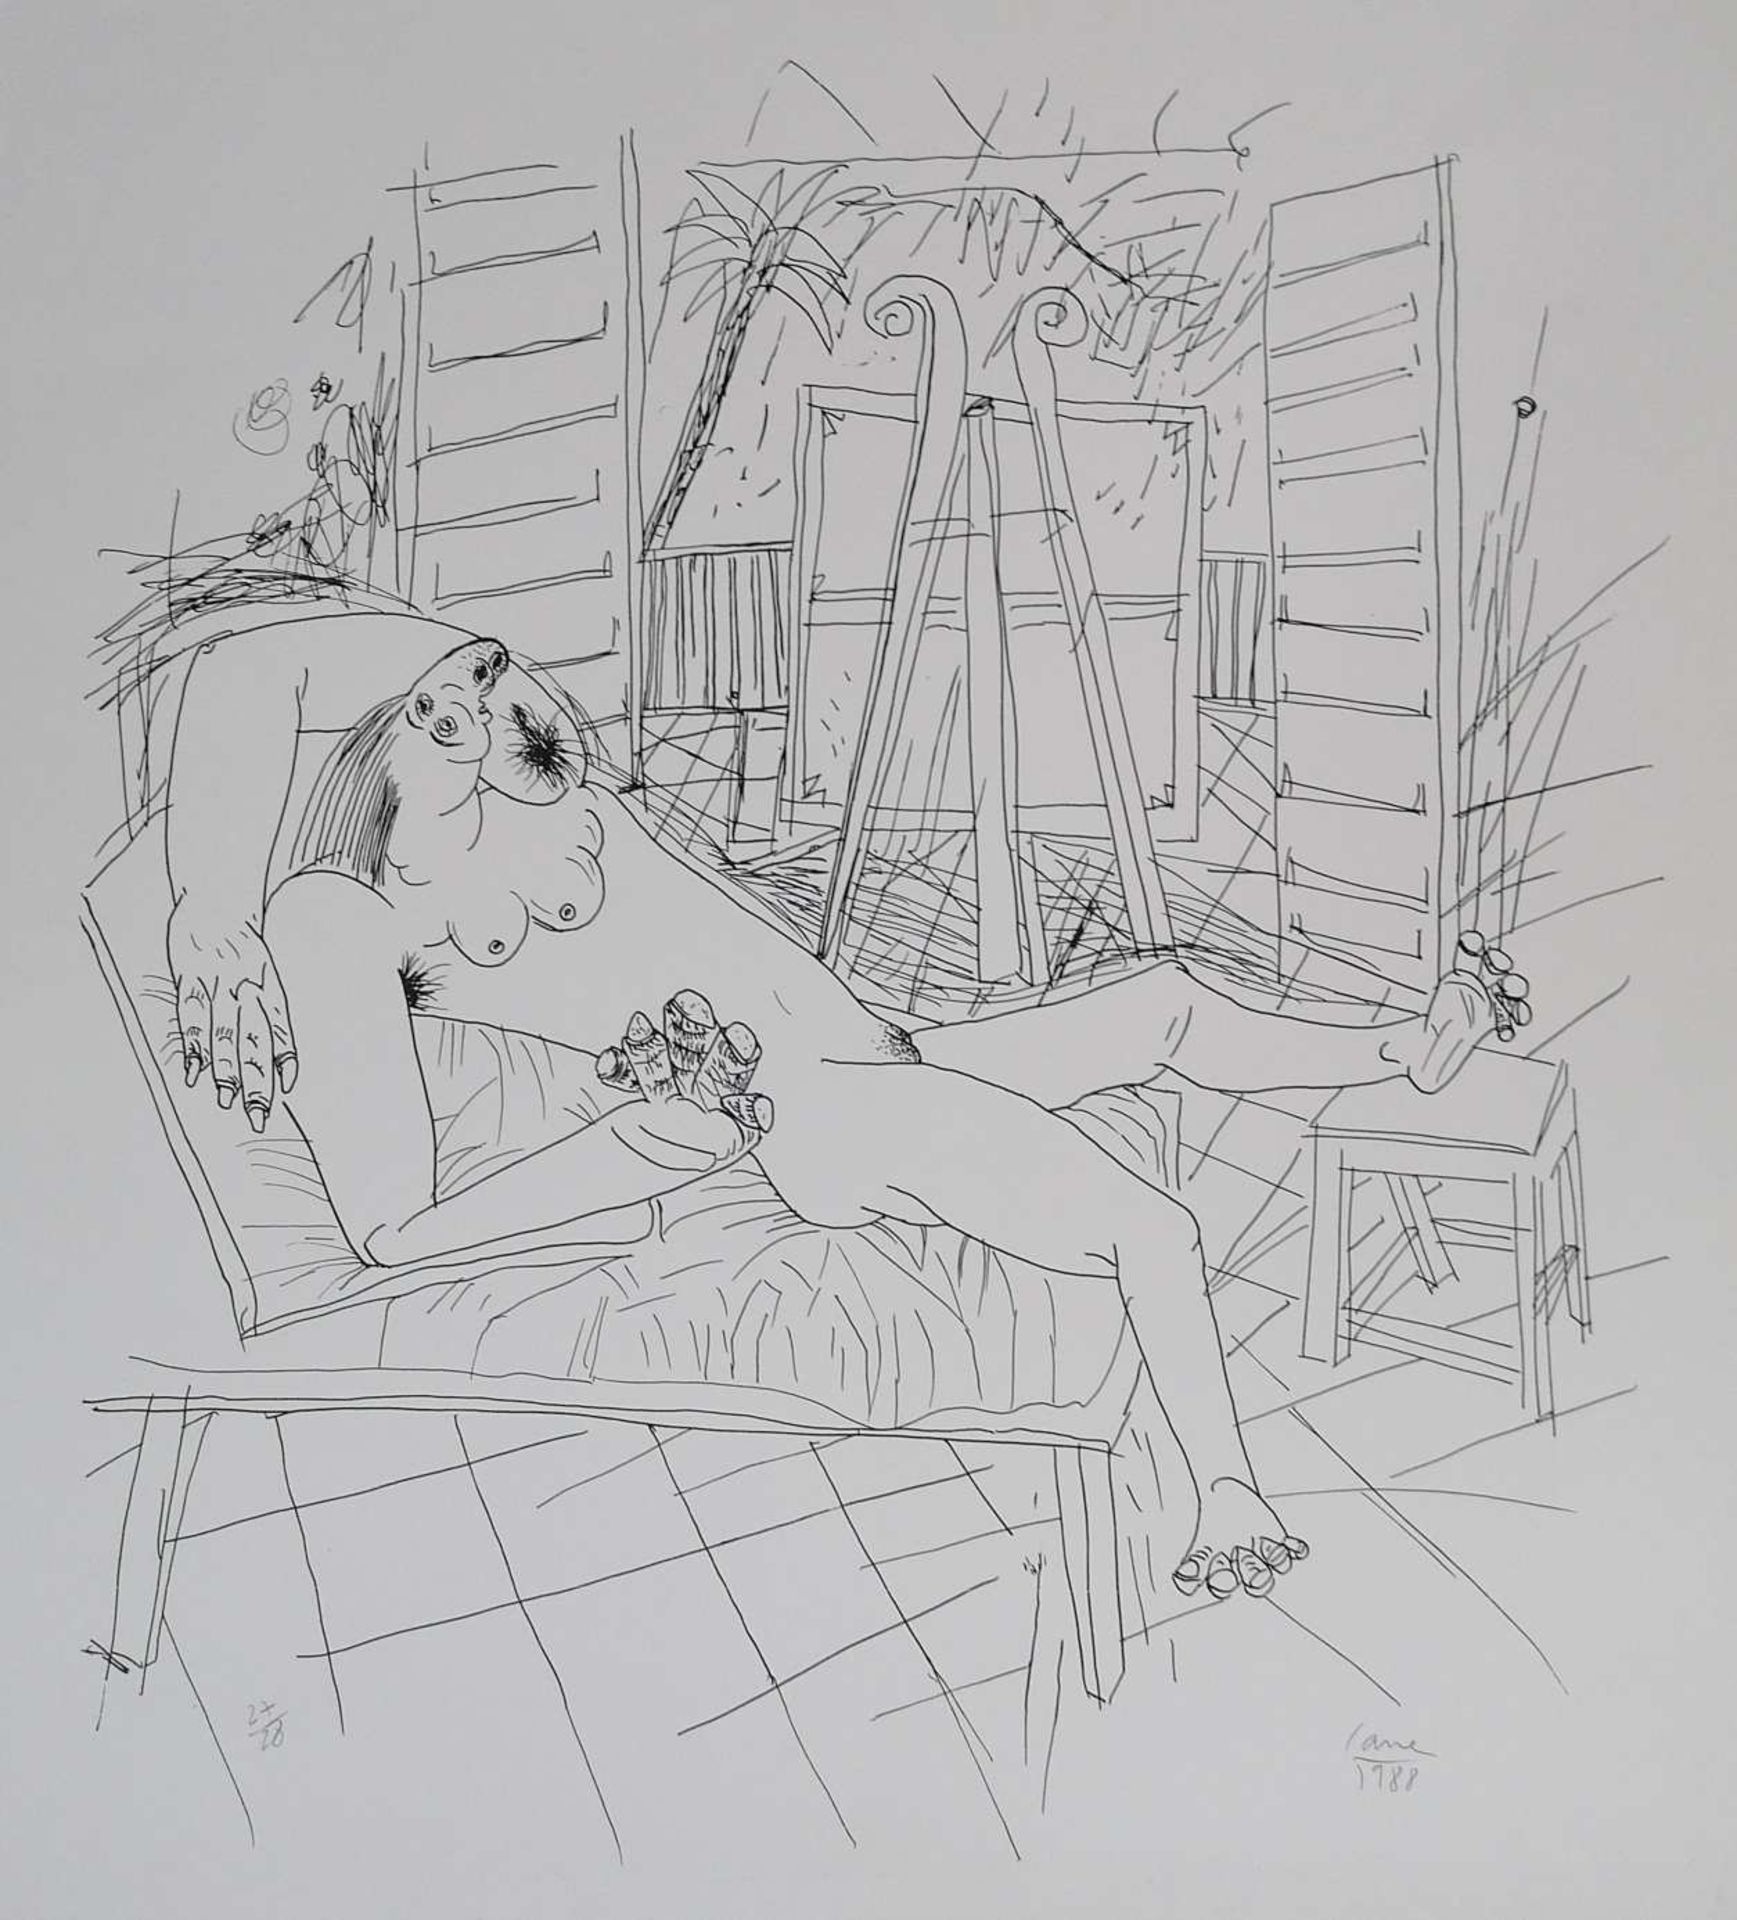 Louis CANE (1943). "Femmes allongées" Lithographie 69 x 63 cm. Numérotée 27/28. Signée en bas à